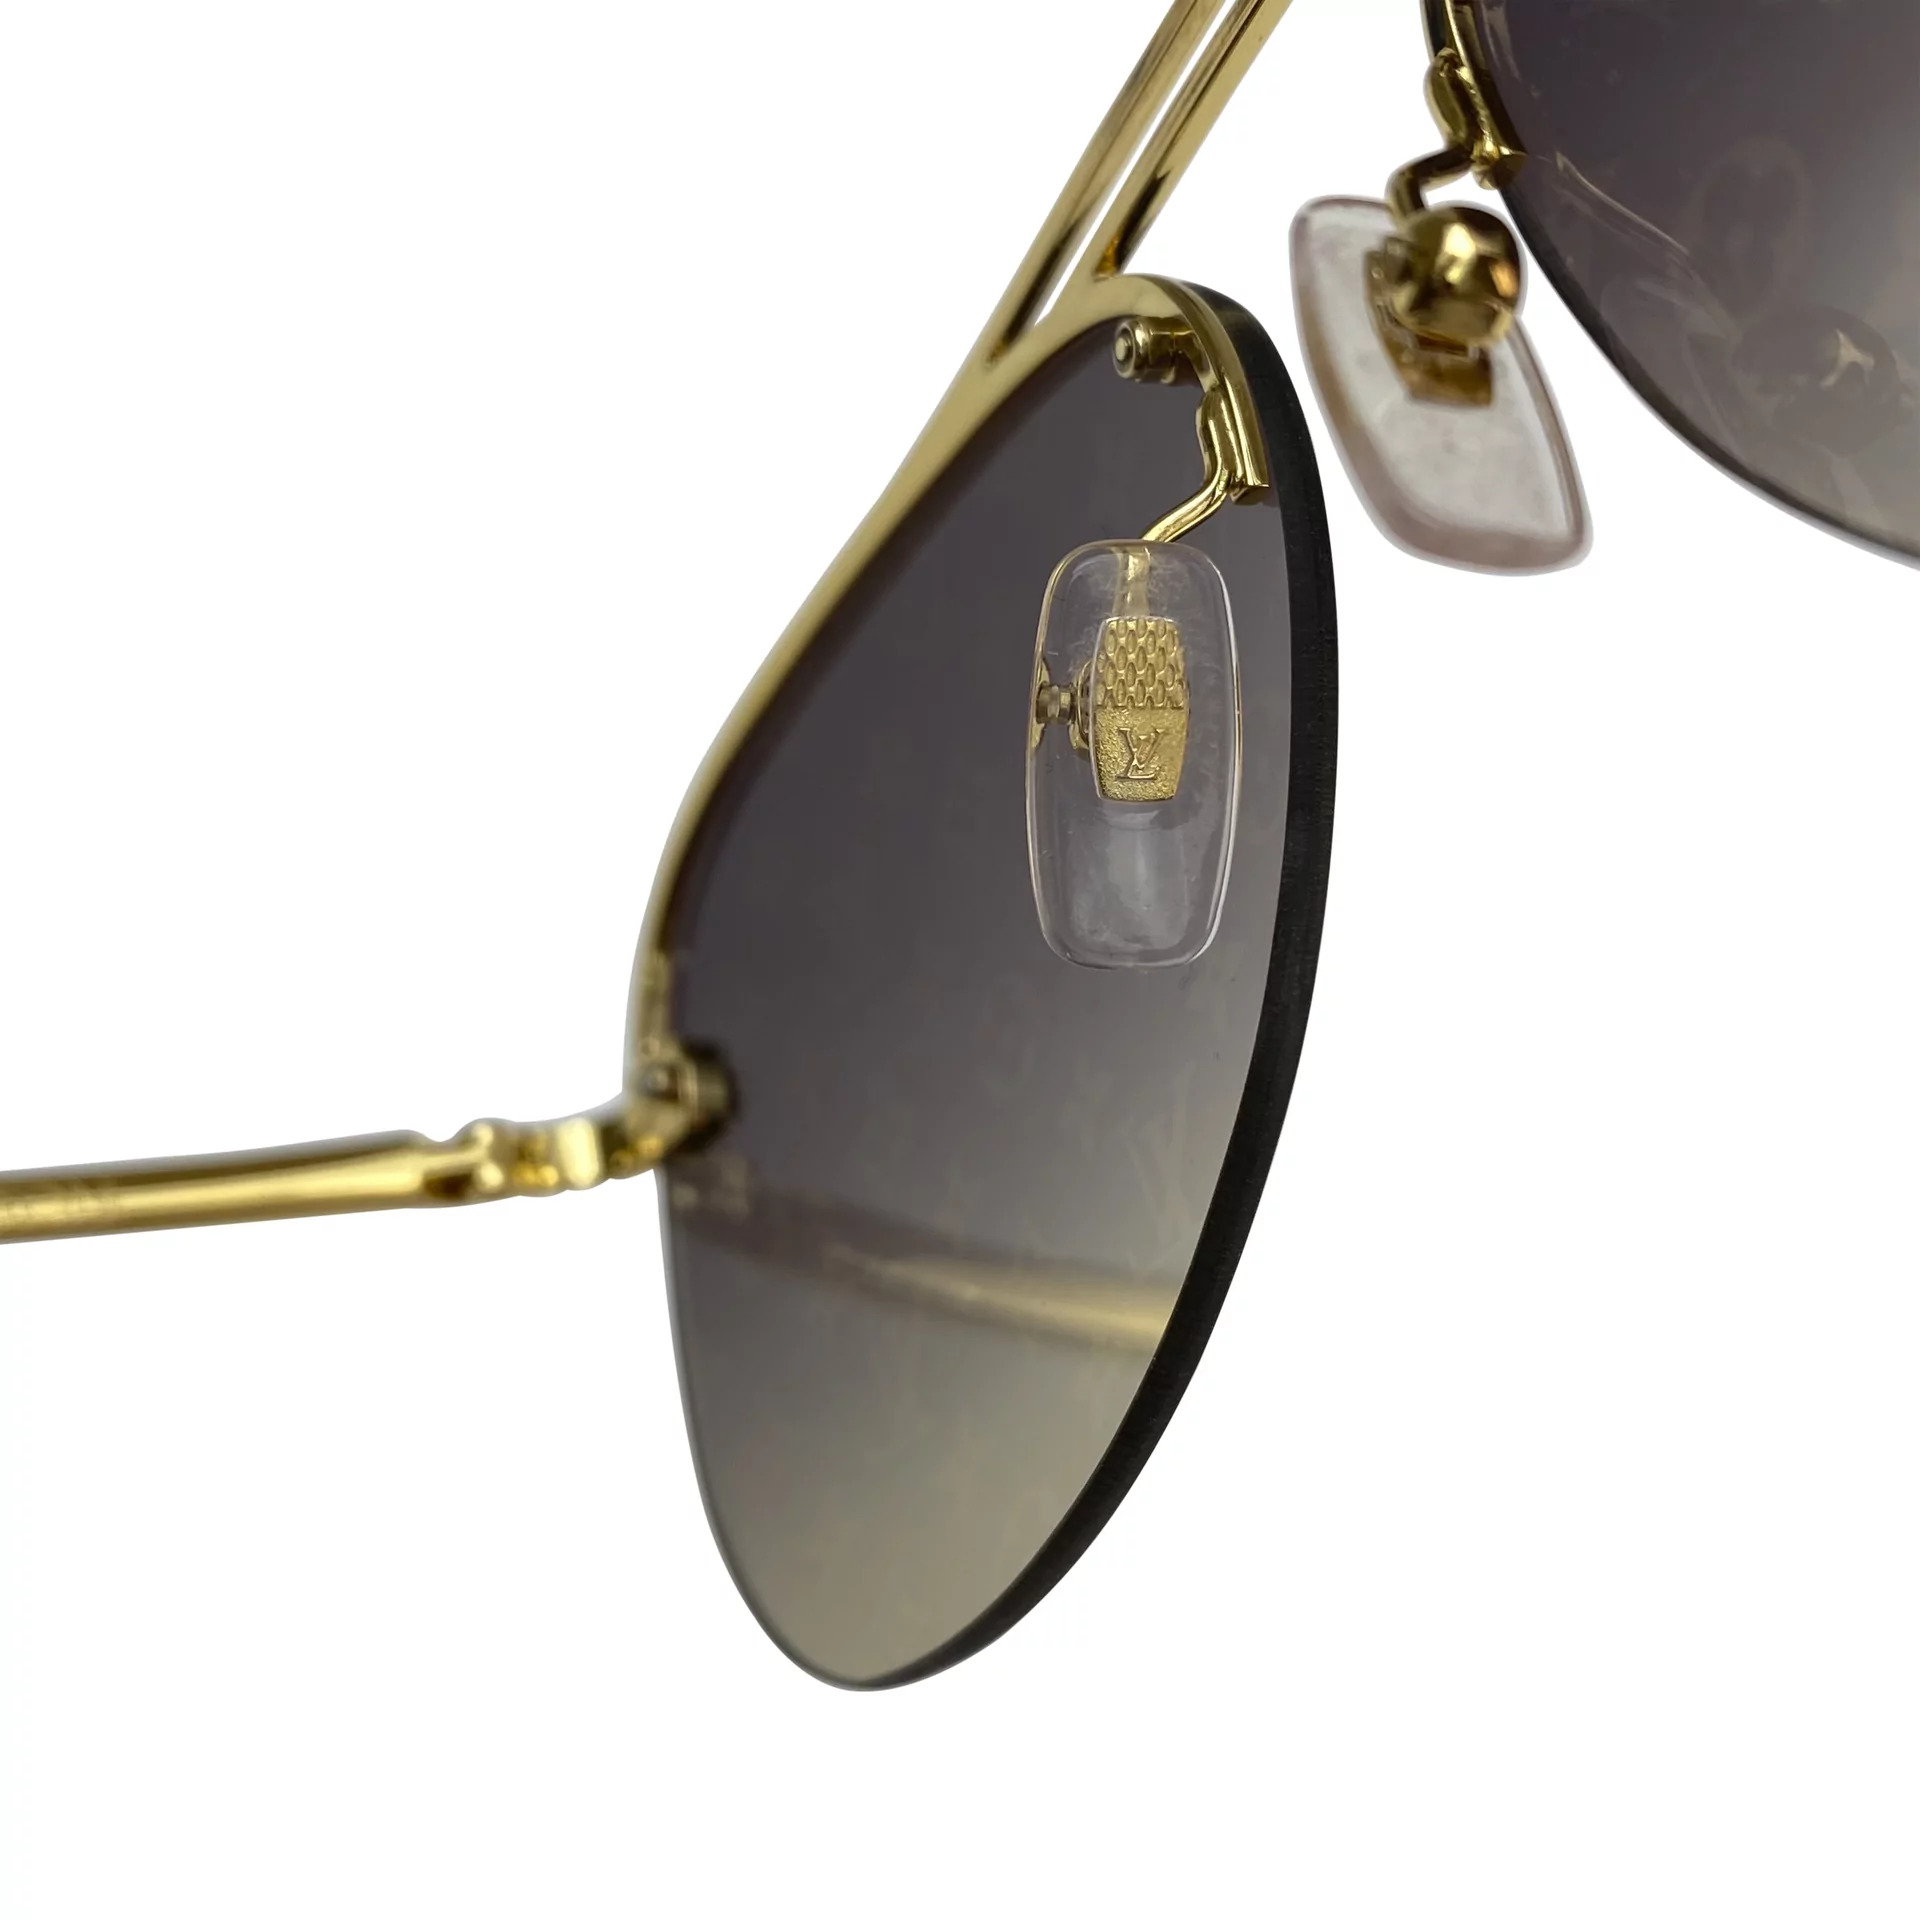 Louis Vuitton apresenta sua coleção de óculos de sol. Vem conferir